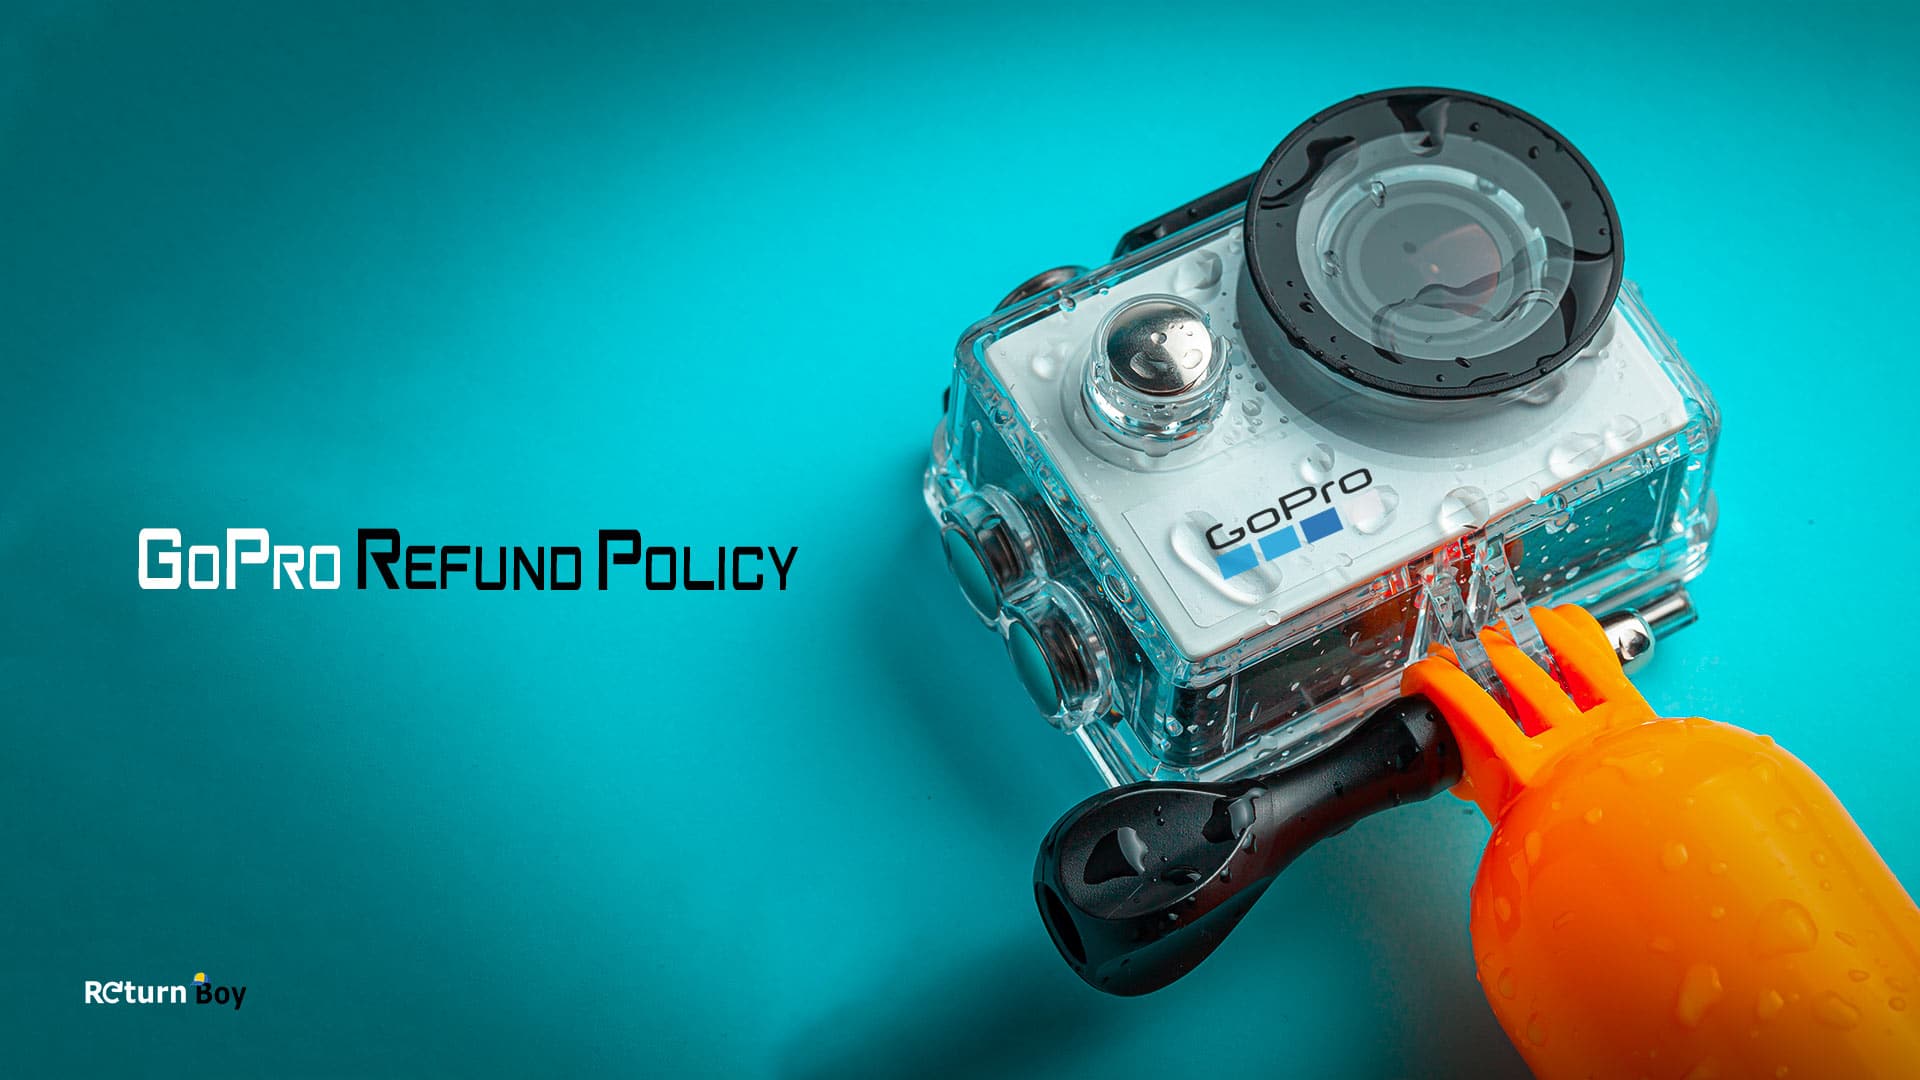 GoPro Refund Policy